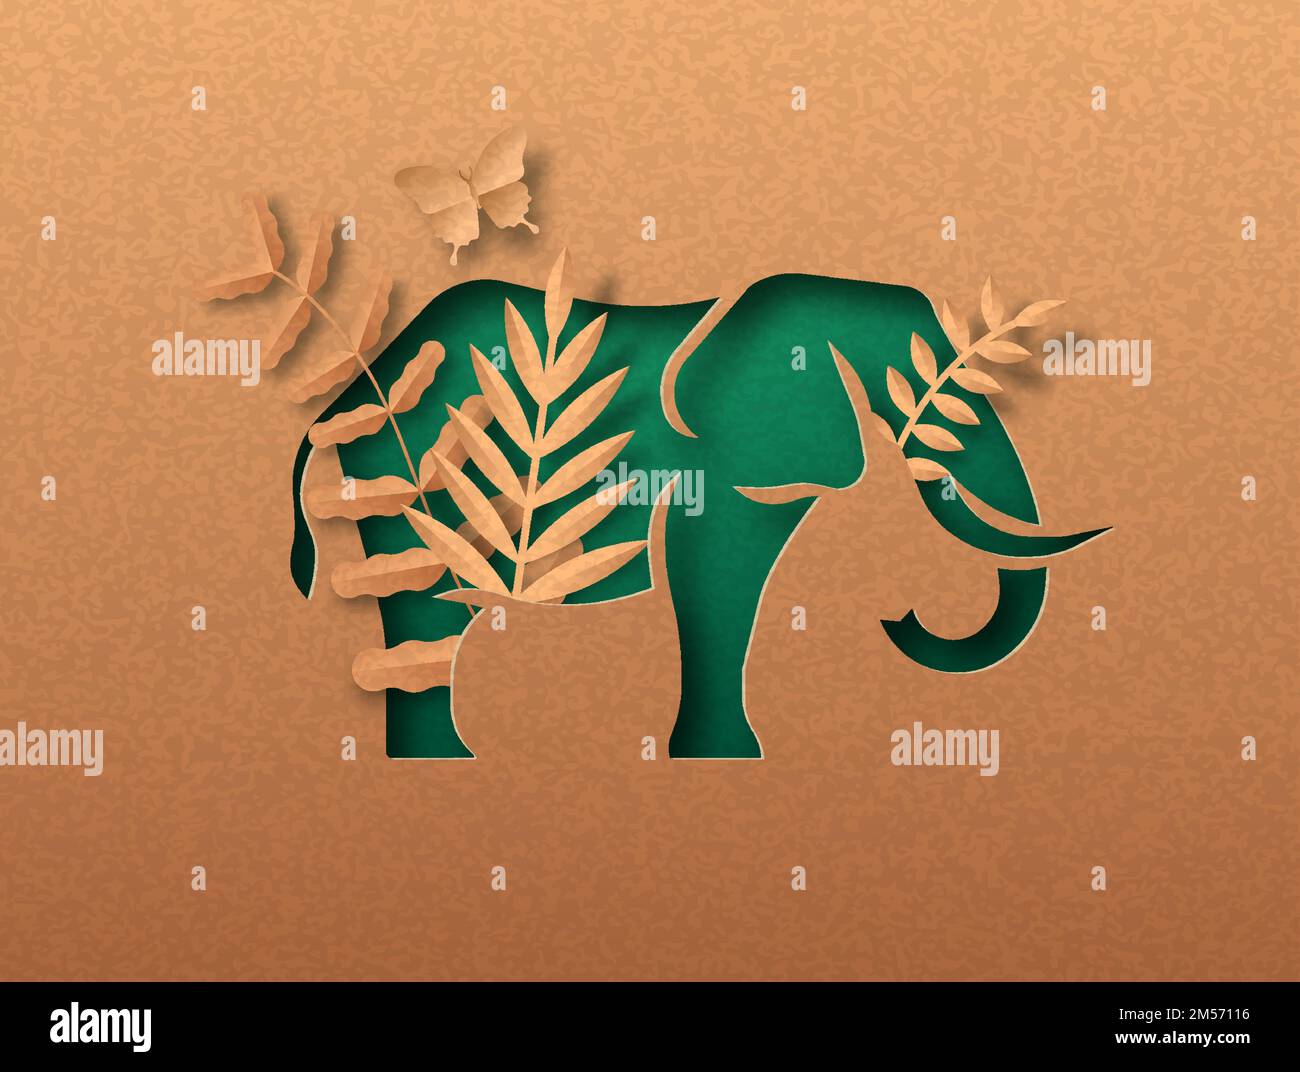 Elefante animale verde papercut illustrazione con foglia di pianta tropicale. Carta riciclata tessuto taglio concetto per la protezione della vita selvaggia, anti bracconaggio o. Illustrazione Vettoriale